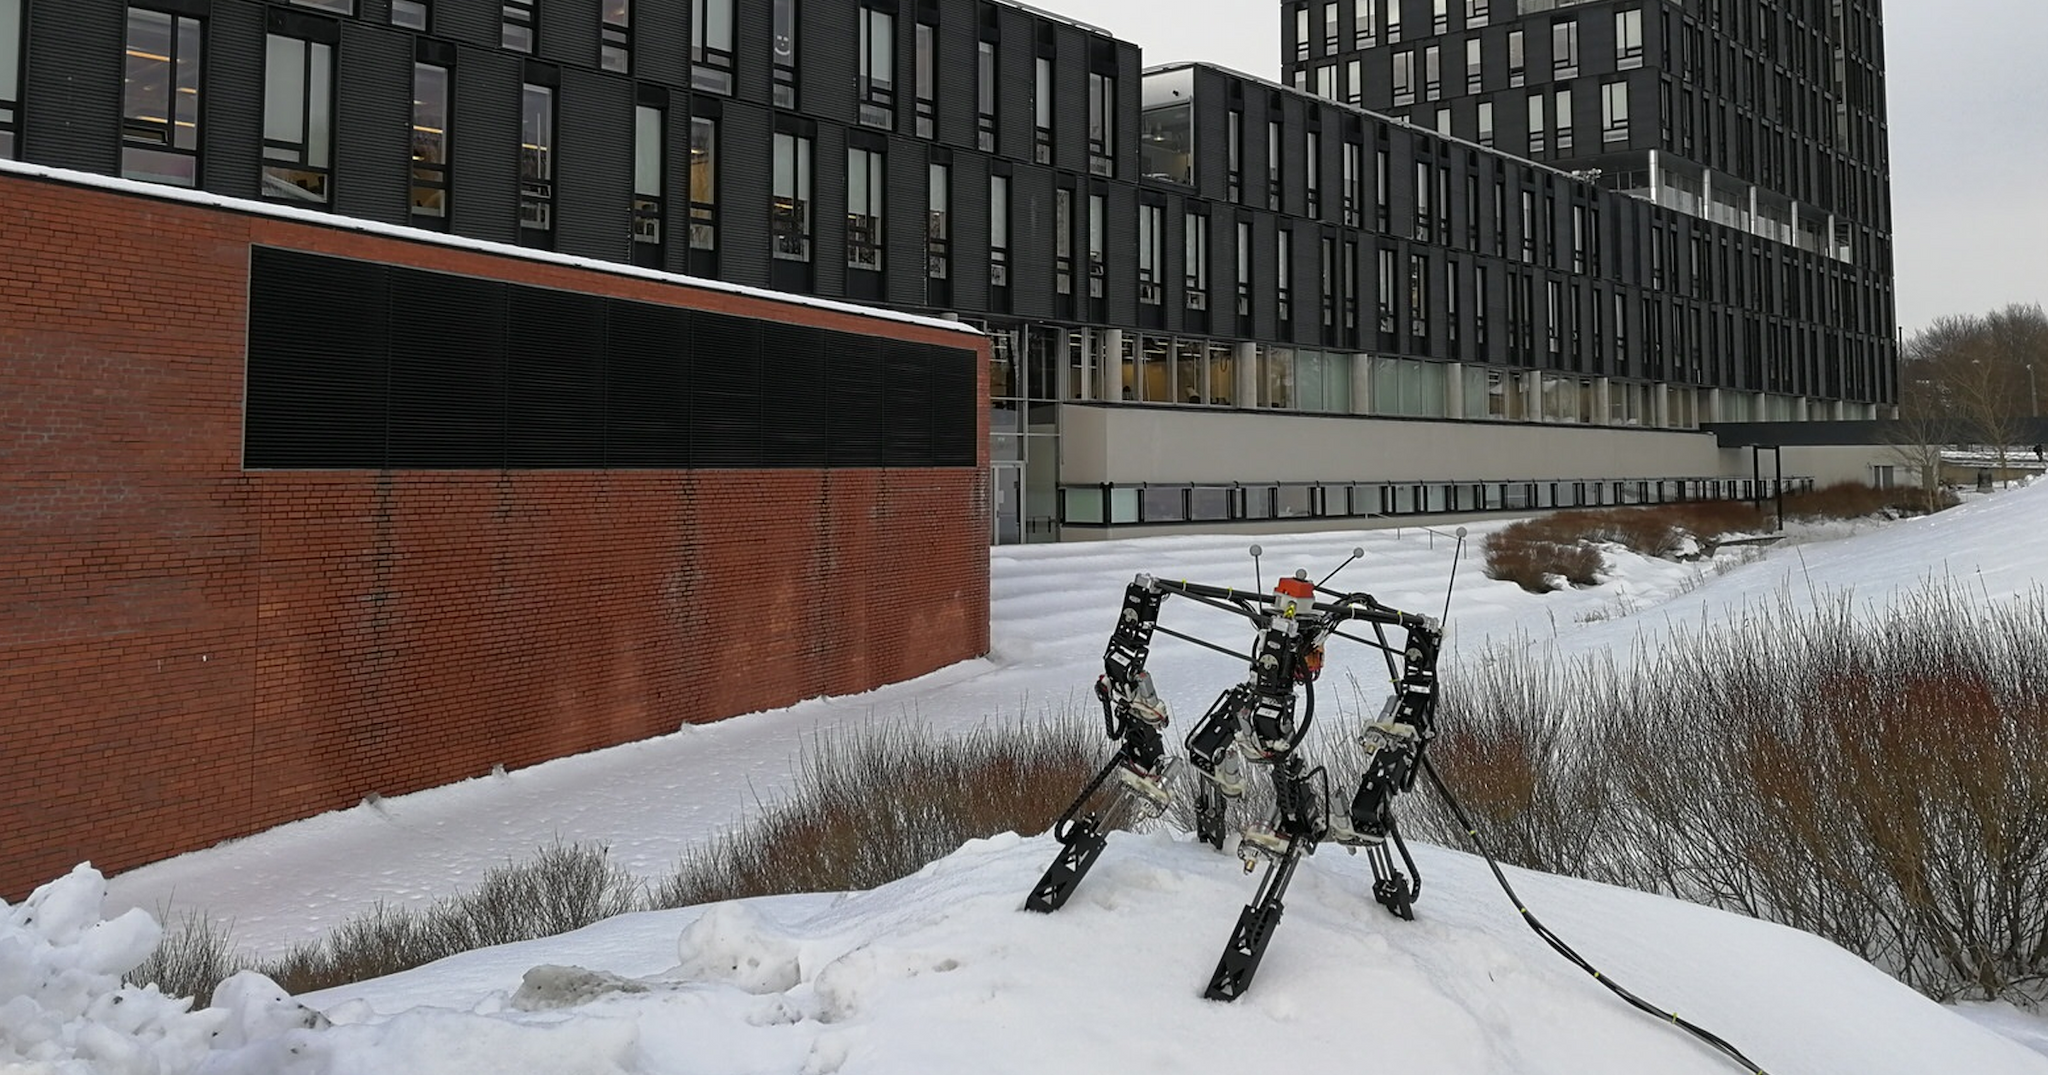 University of Oslo/Dyret/Tønnes Nygaard